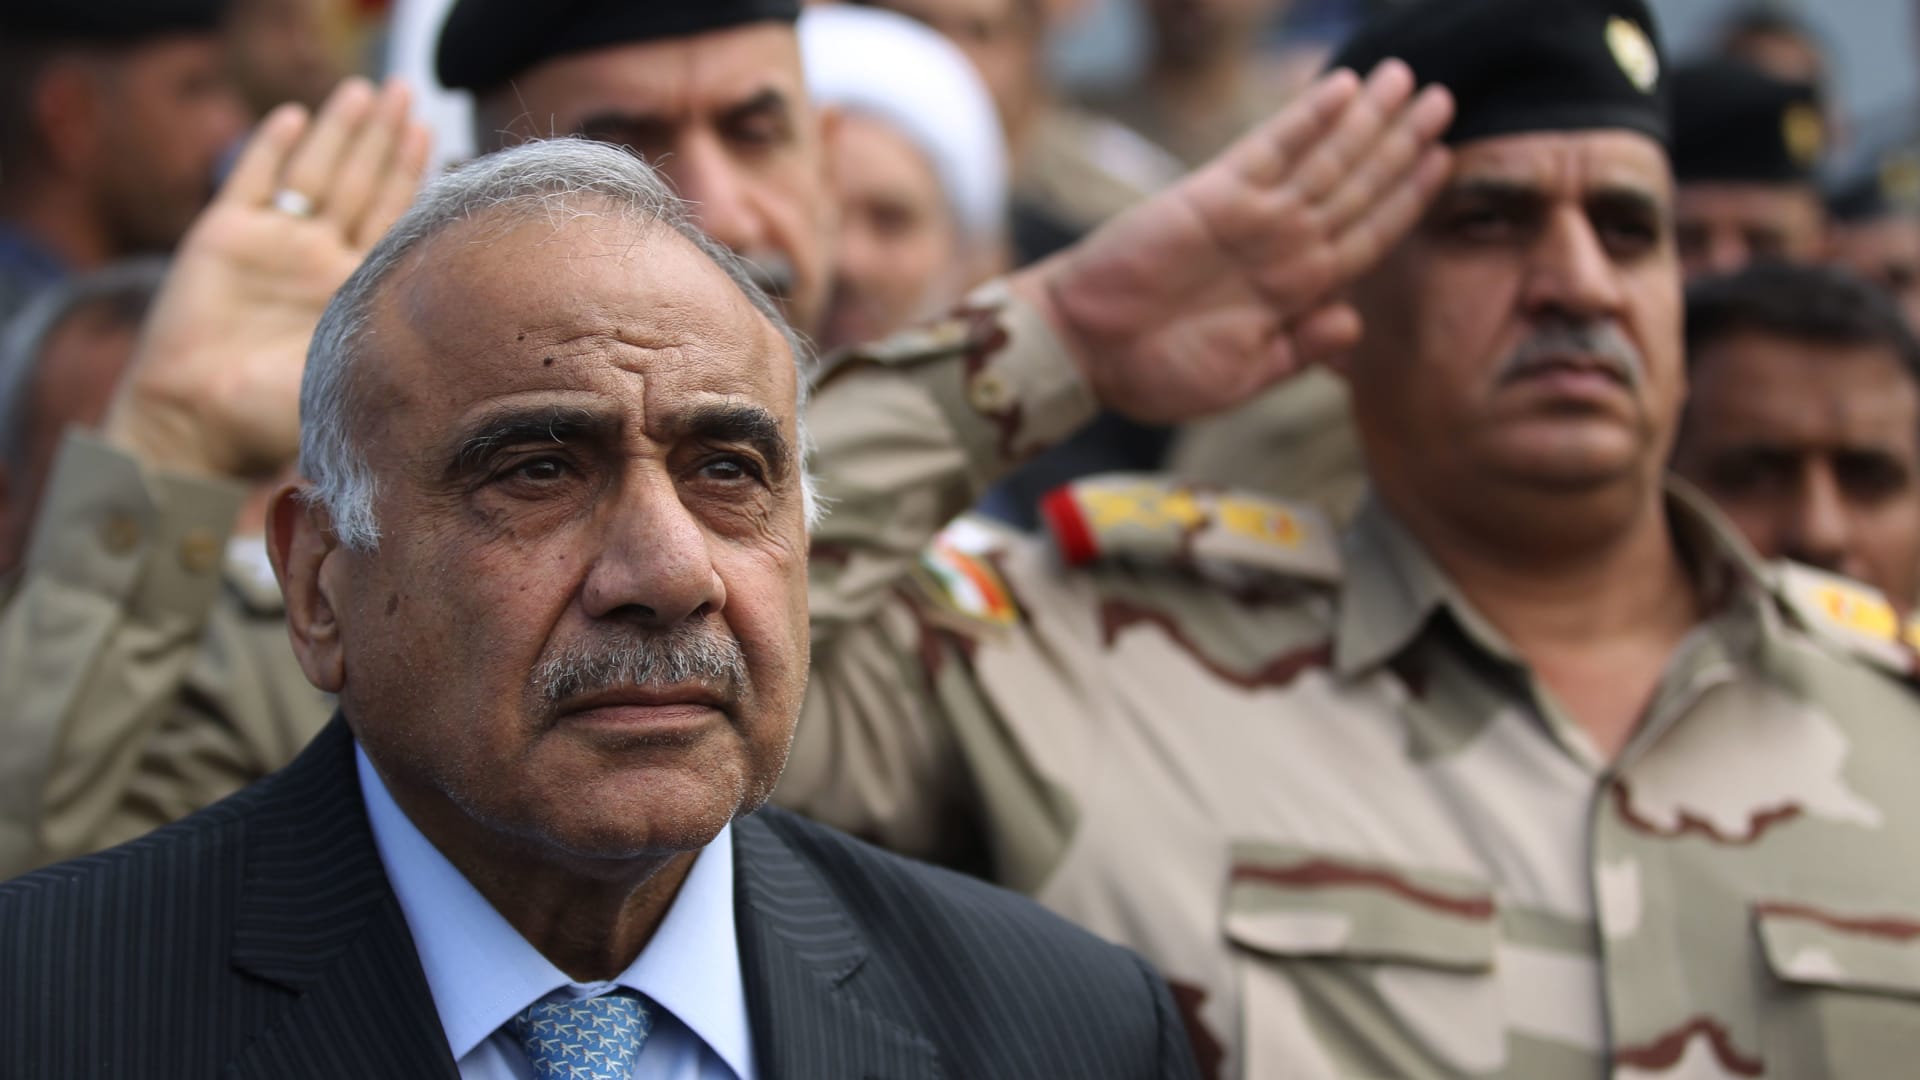 كيف تؤثر الحروب بالوكالة على الشعب العراقي؟